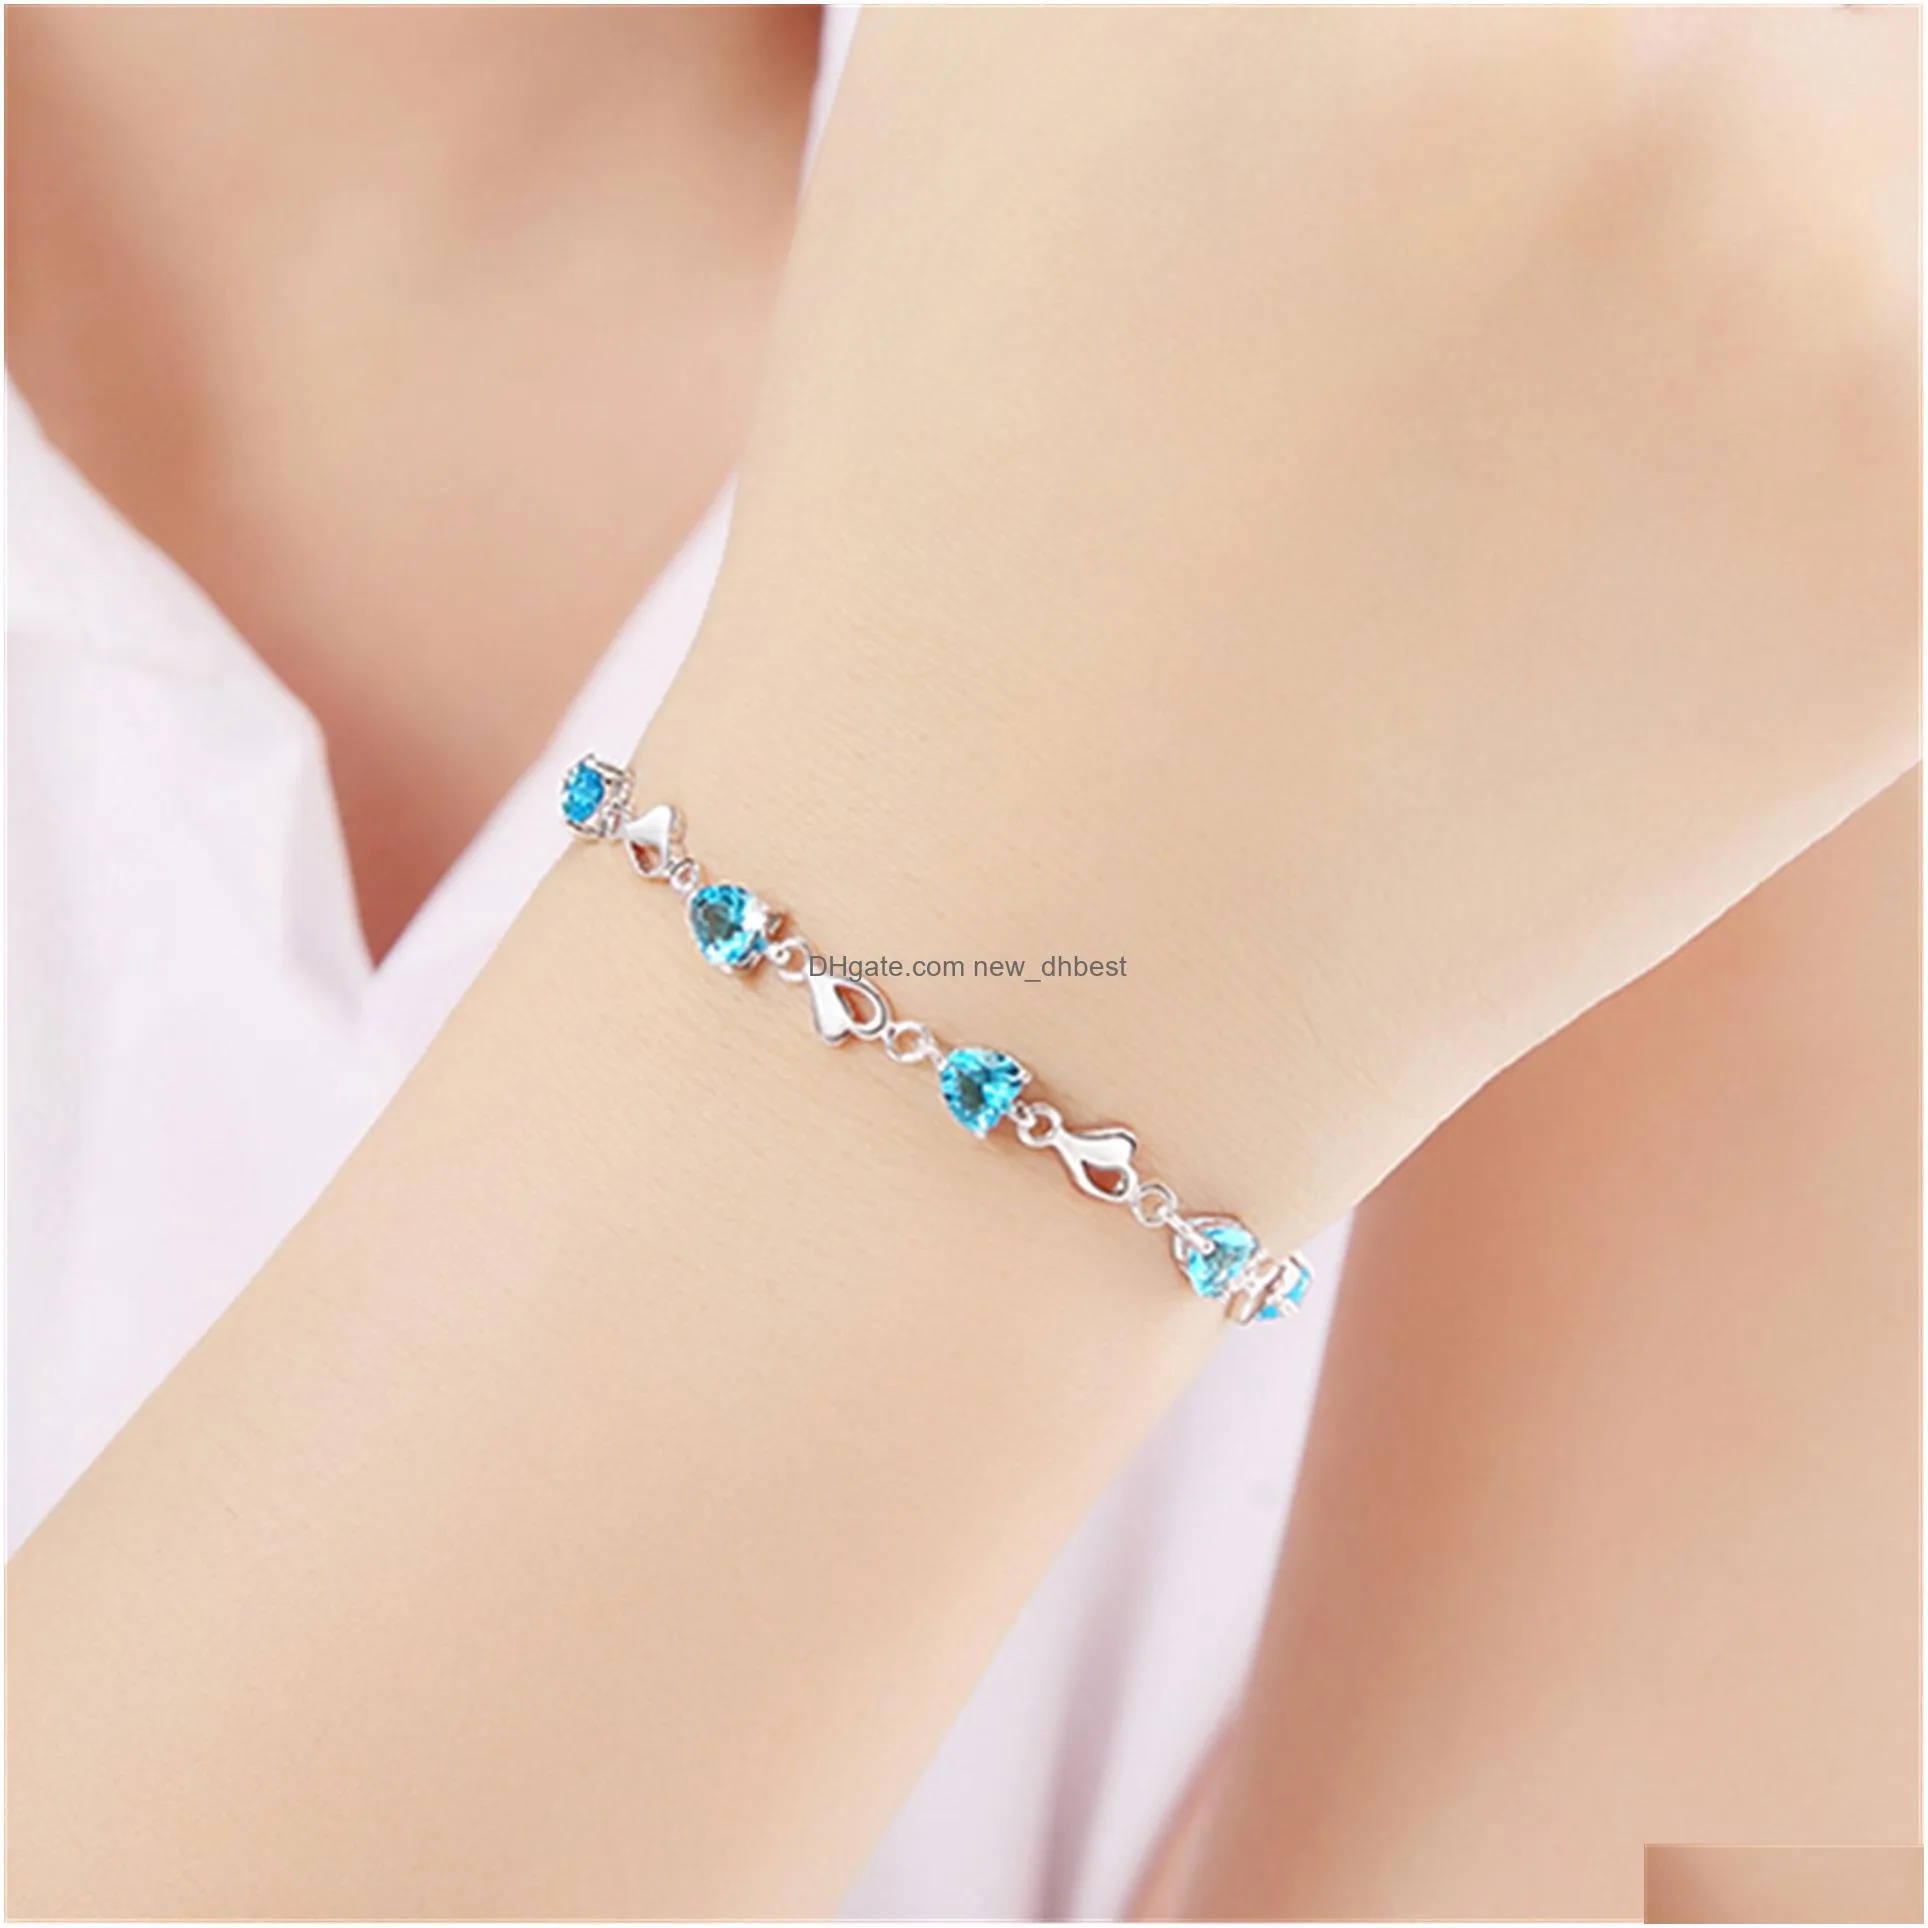 purple crystal heart bracelet romantic wedding gift pink blue amethyst zircon bracelets for women jewelry